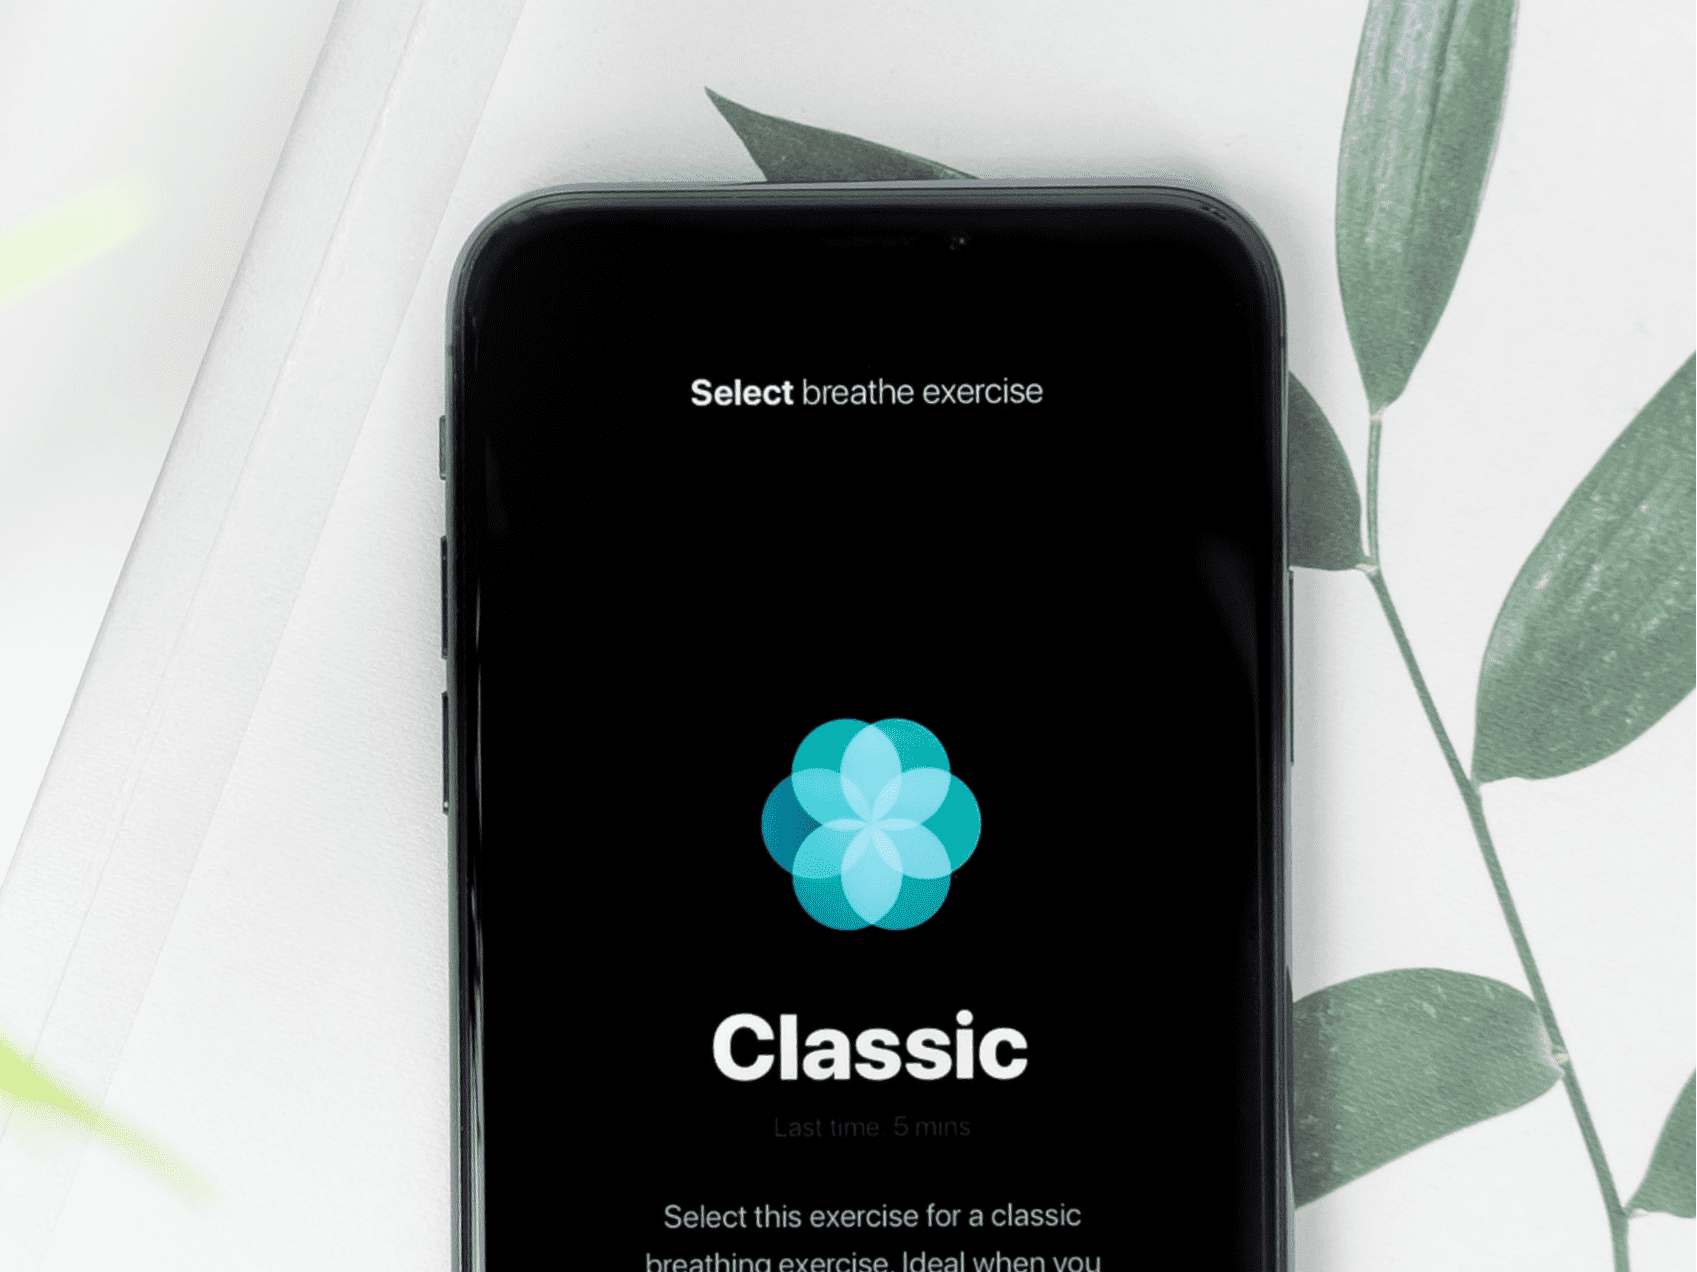 IOS app design for Classic - Featured image